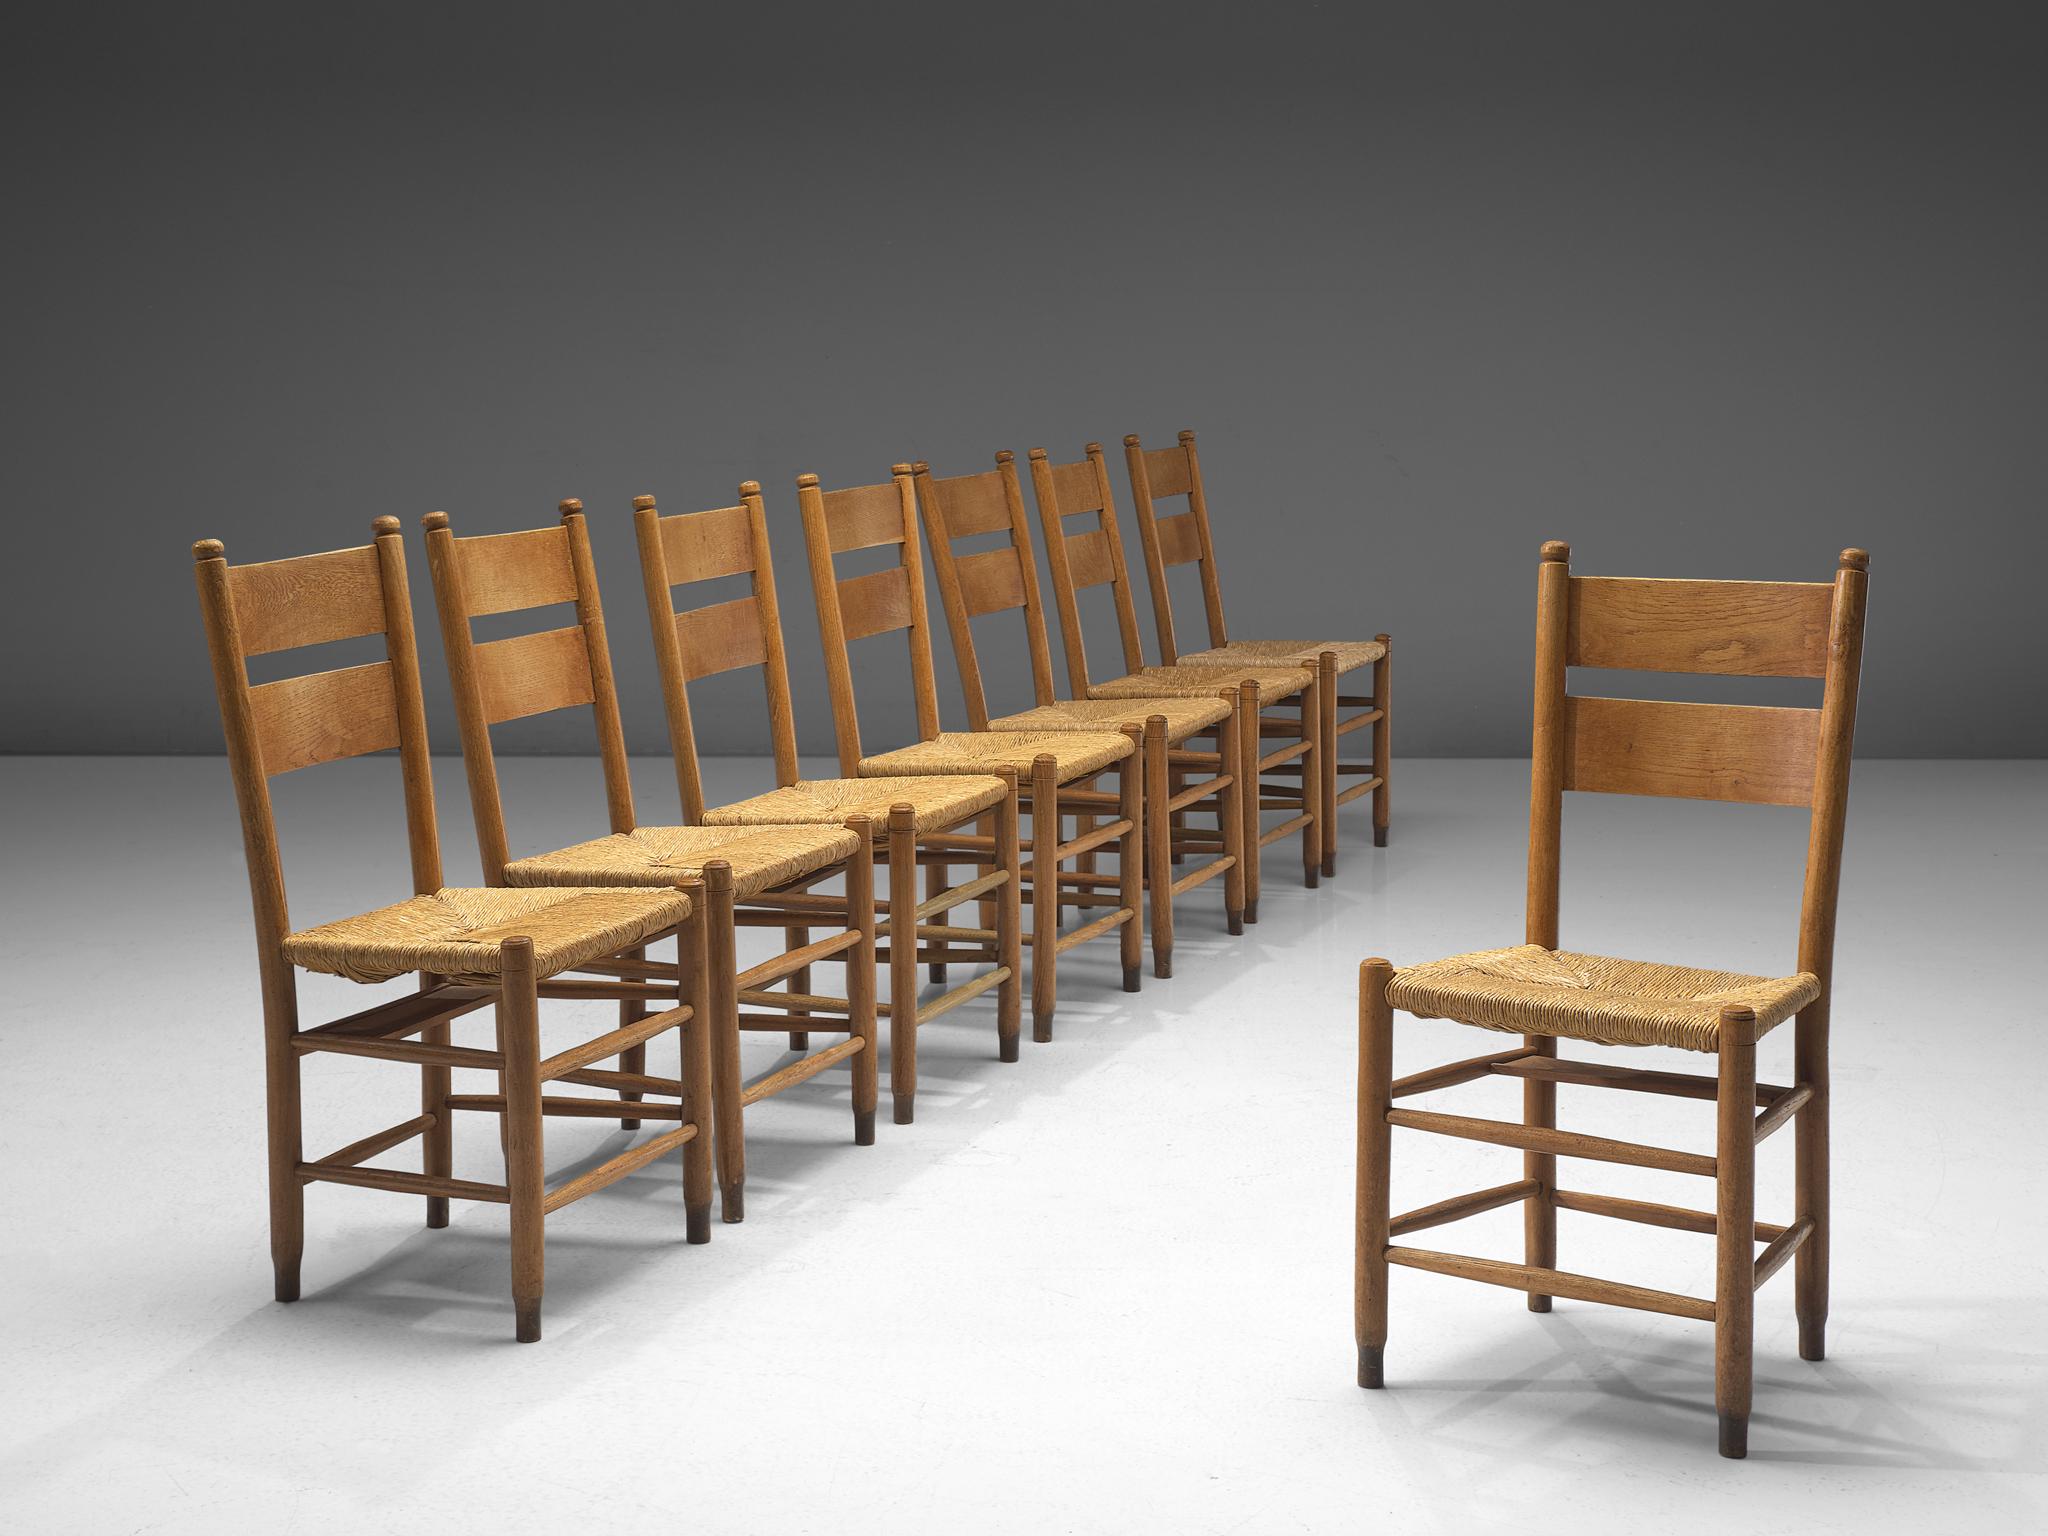 Chaises de salle à manger, chêne, osier paille, Danemark, années 1960 

Cette collection comprend un large éventail de chaises d'église danoises rustiques, construites en bois de chêne durable et caractérisées par leurs sièges en paille distinctifs.